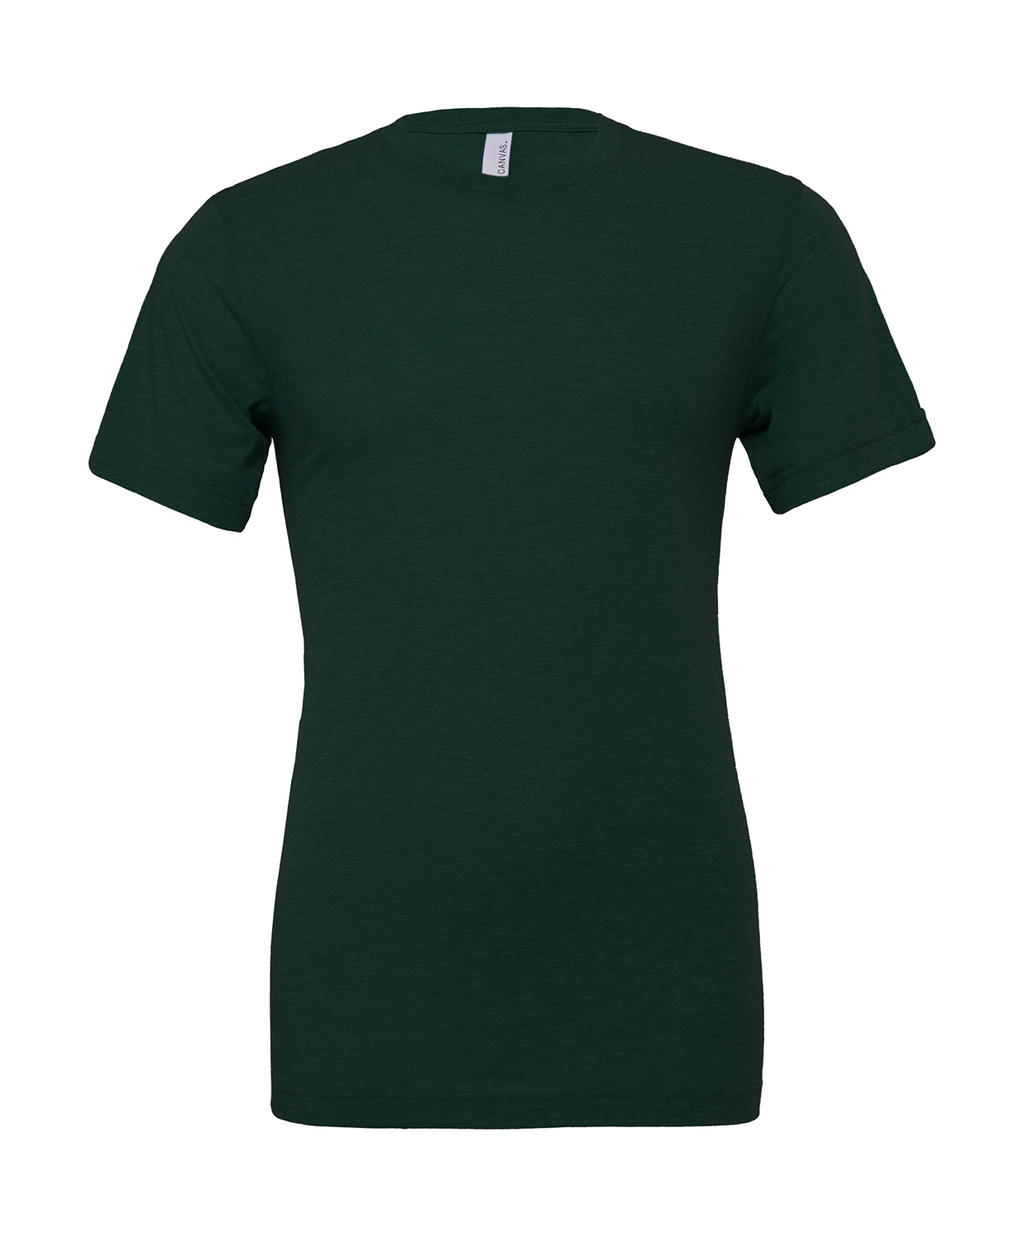 Unisex tričko Triblend - emerald triblend